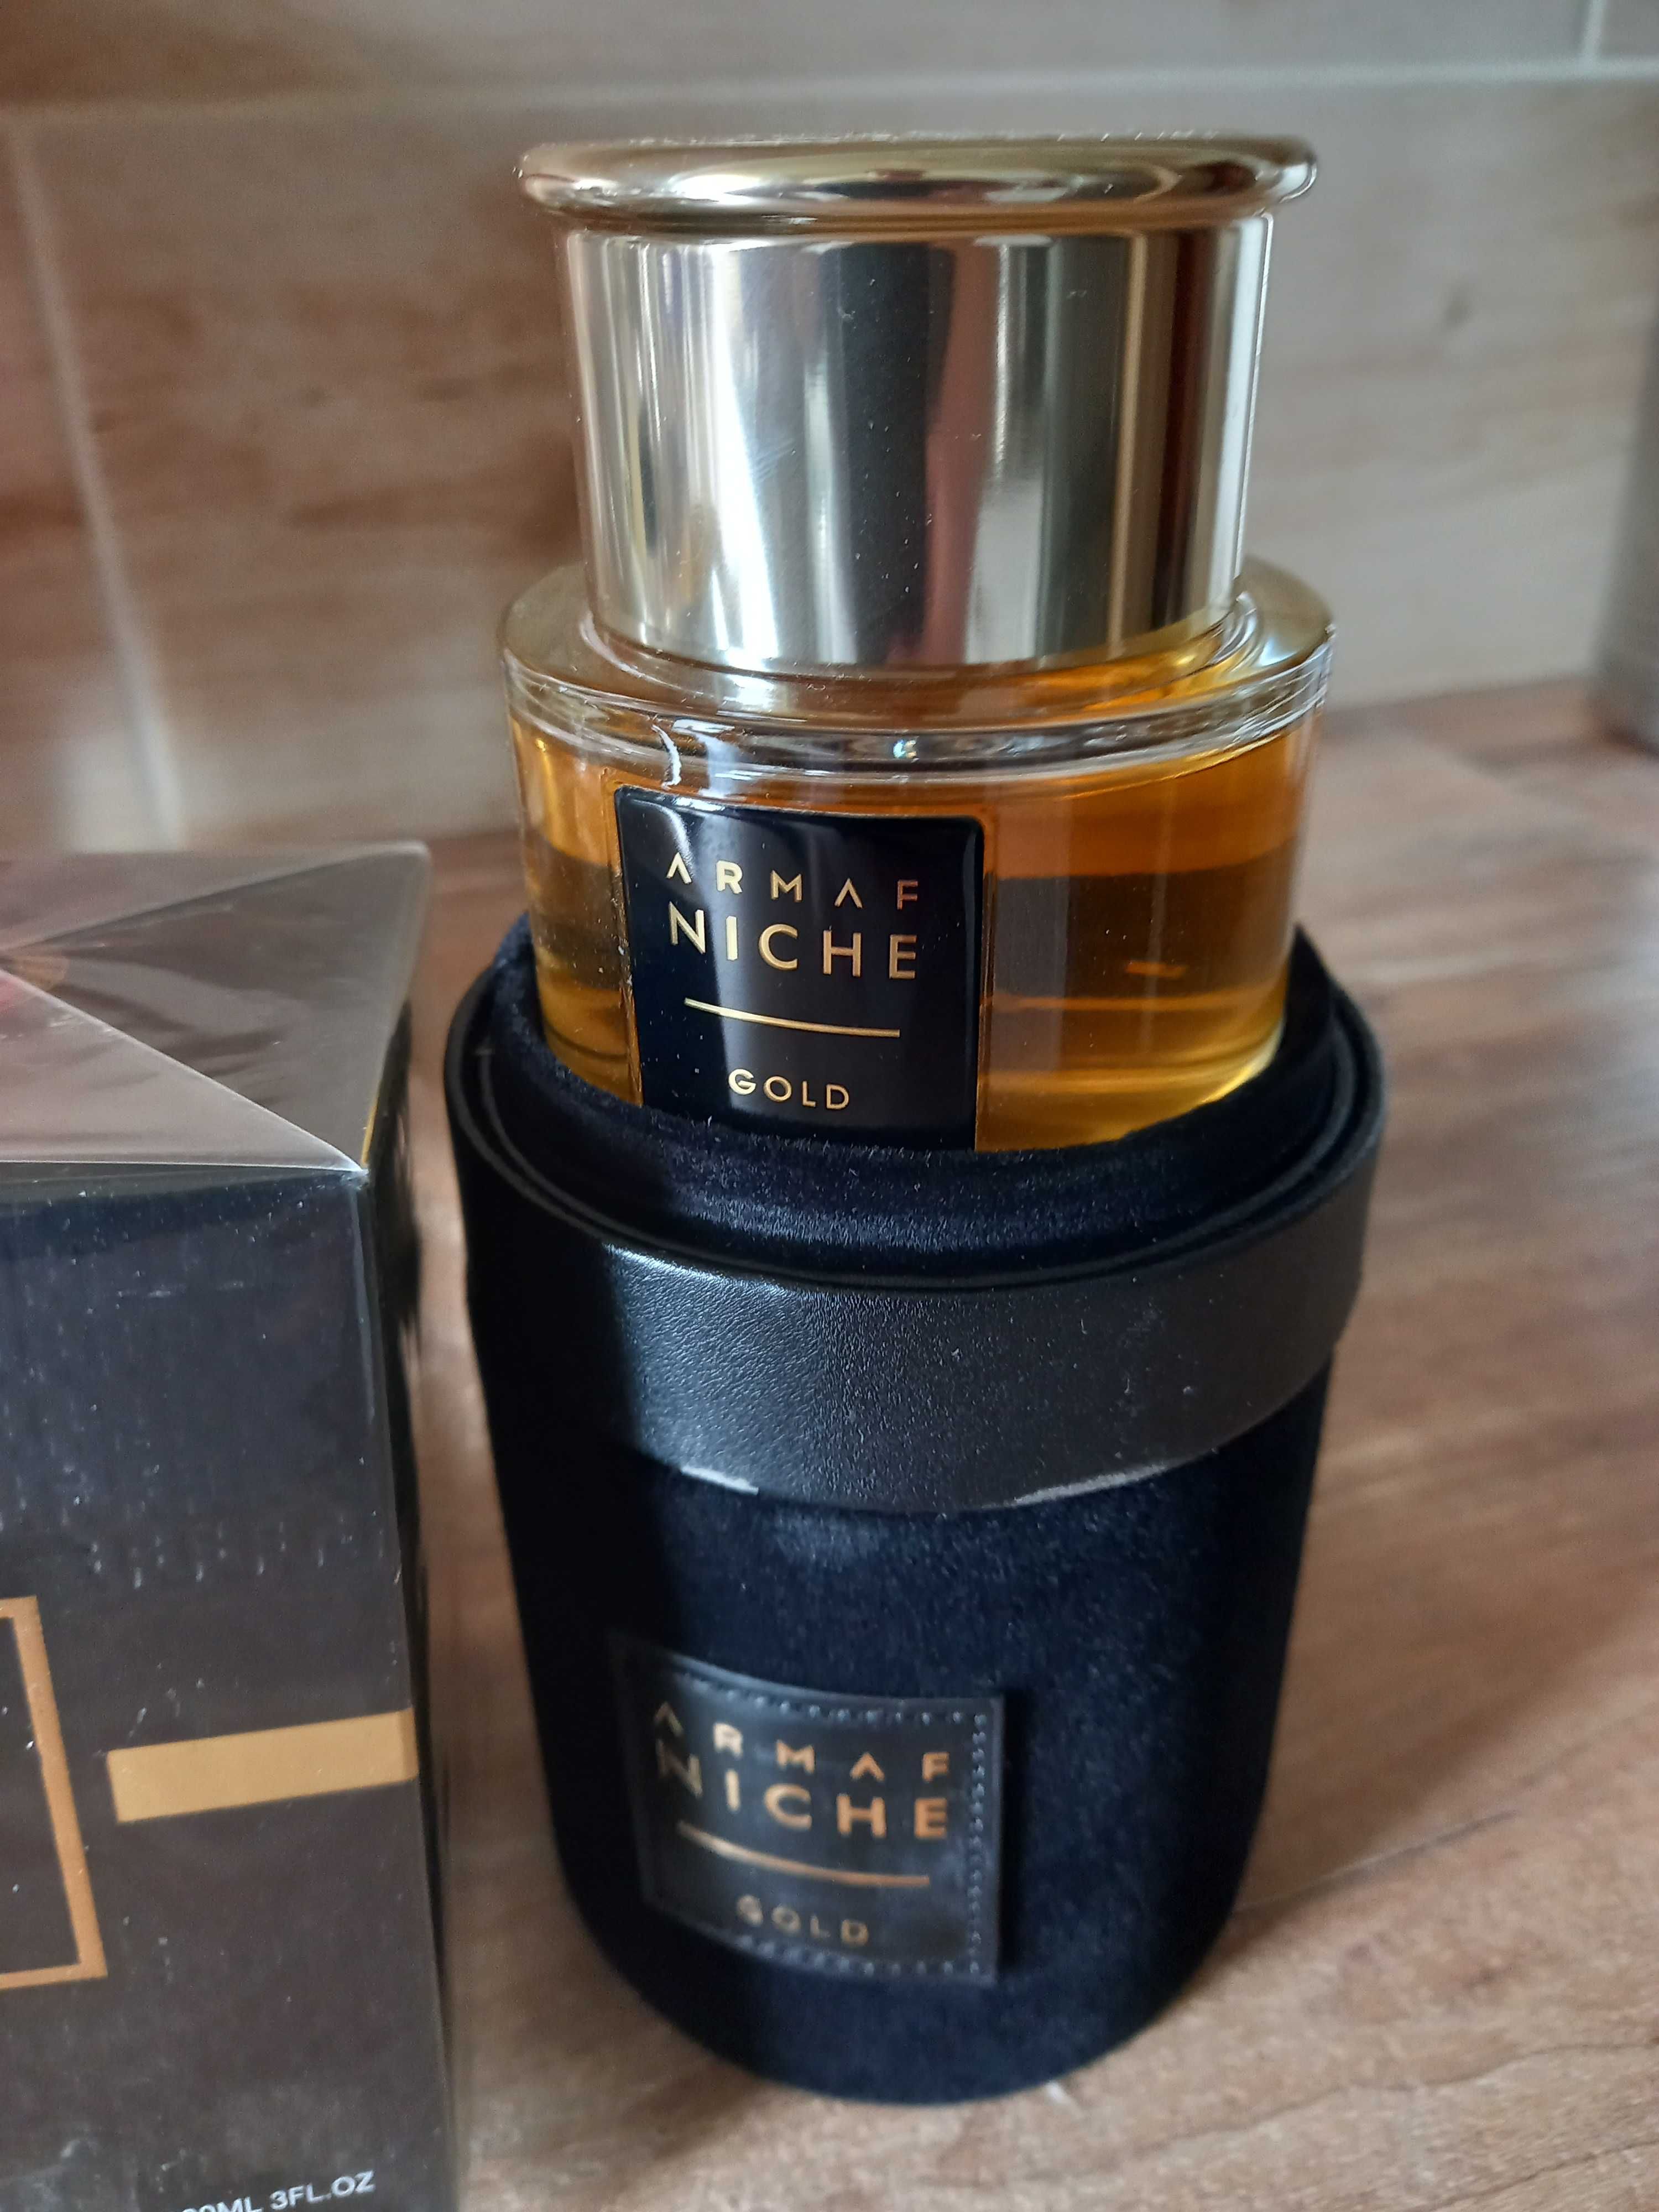 Perfumy damskie Armaf Niche Gold 90 ml.